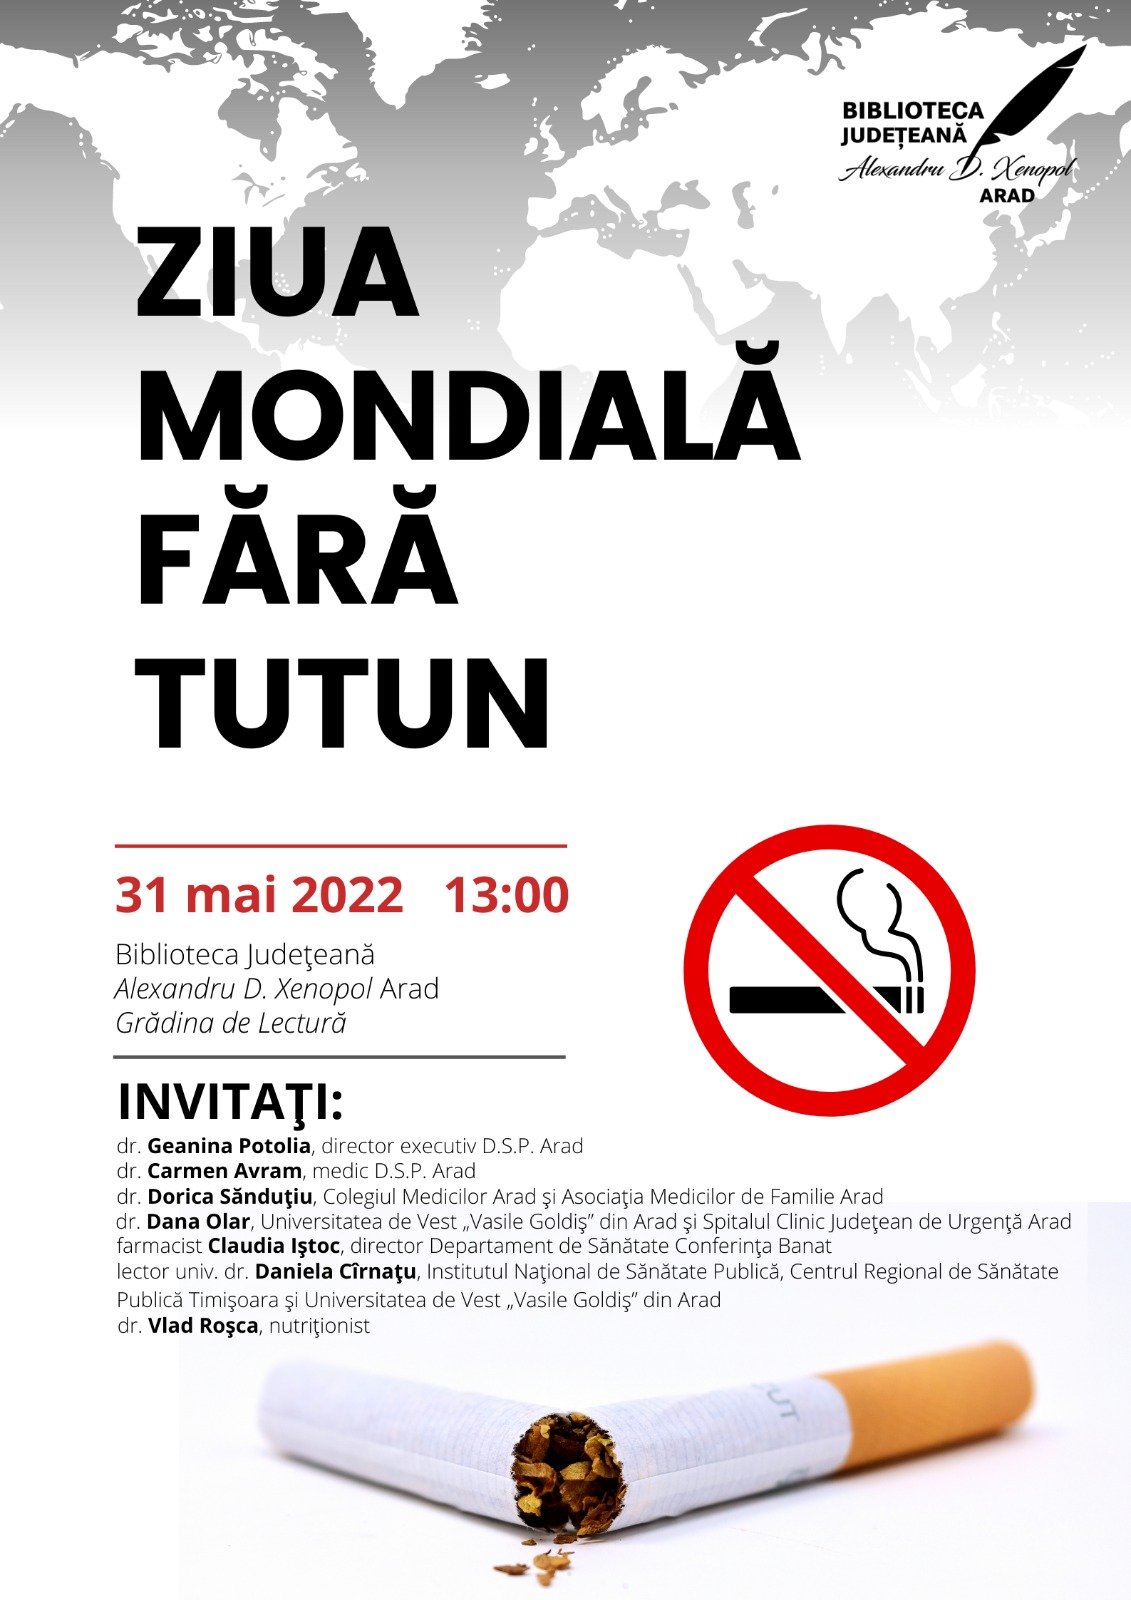 La Bibliotecă, de Ziua Mondială fără Tutun: 31 mai 2022